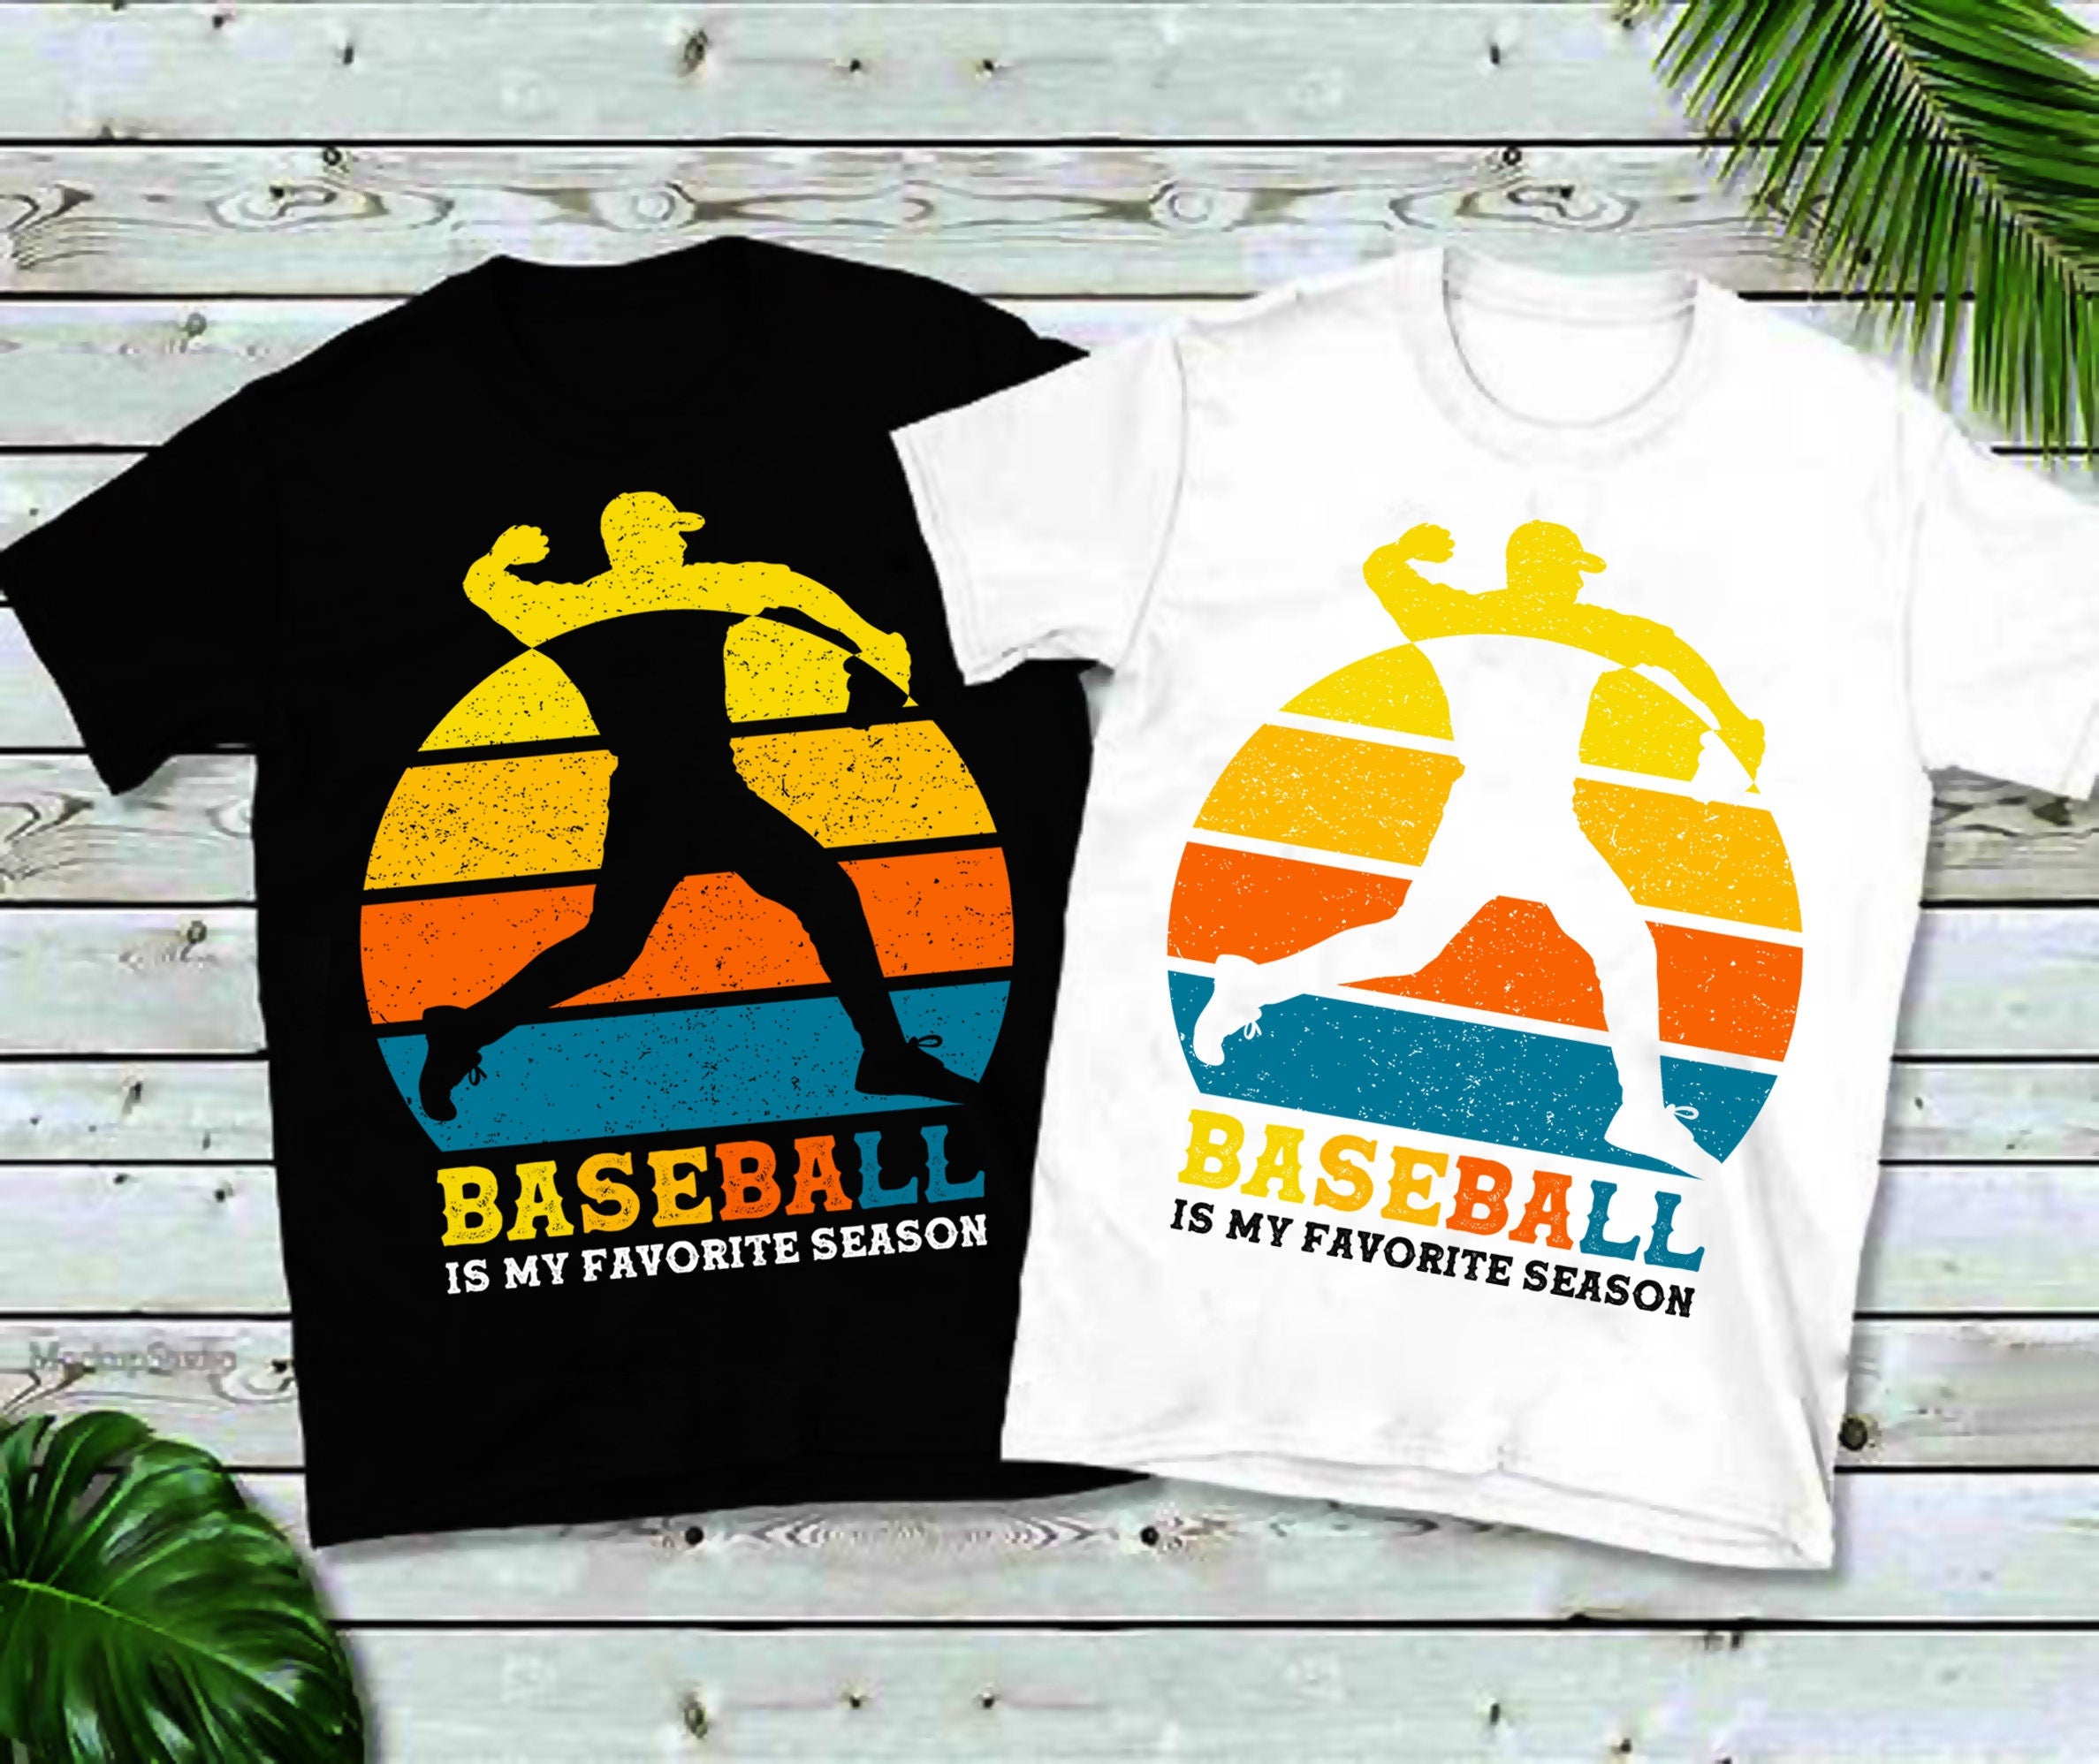 野球は私の好きな季節です |レトロサンセットTシャツ、野球Tシャツ、かわいい野球、野球ママシャツ、スポーツTシャツ、野球愛好家へのギフト - plusminusco.com